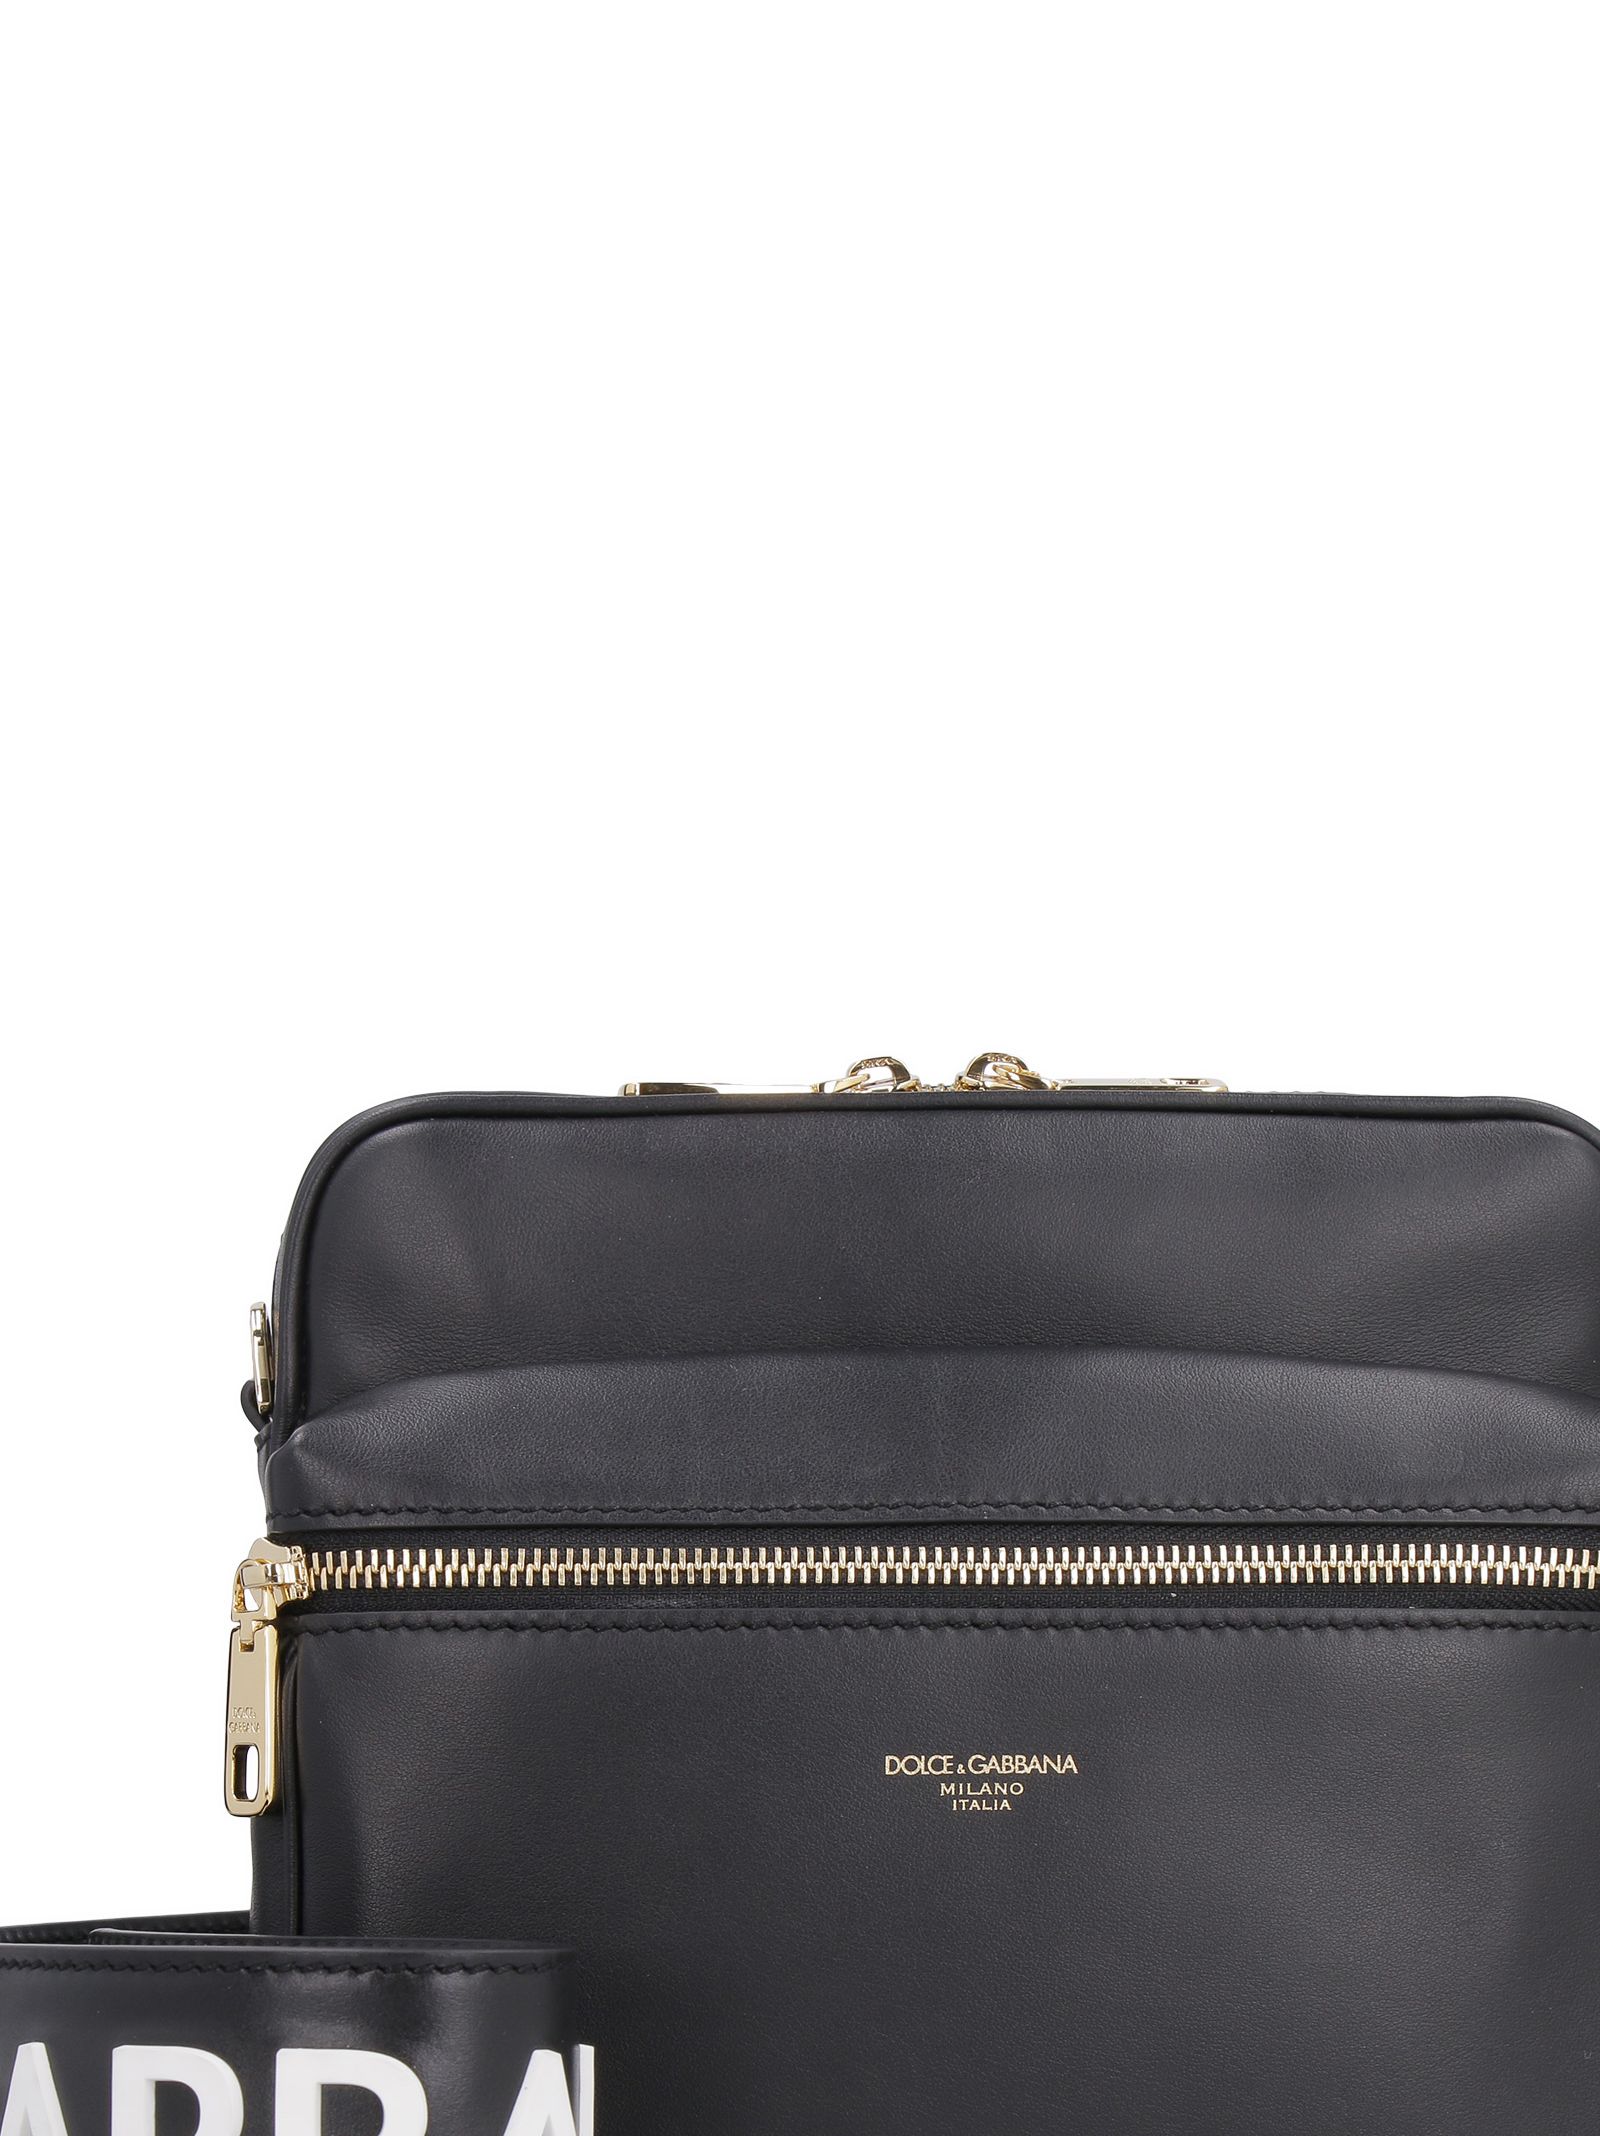 DOLCE & GABBANA Dolce & Gabbana Leather Messenger Bag,10912227